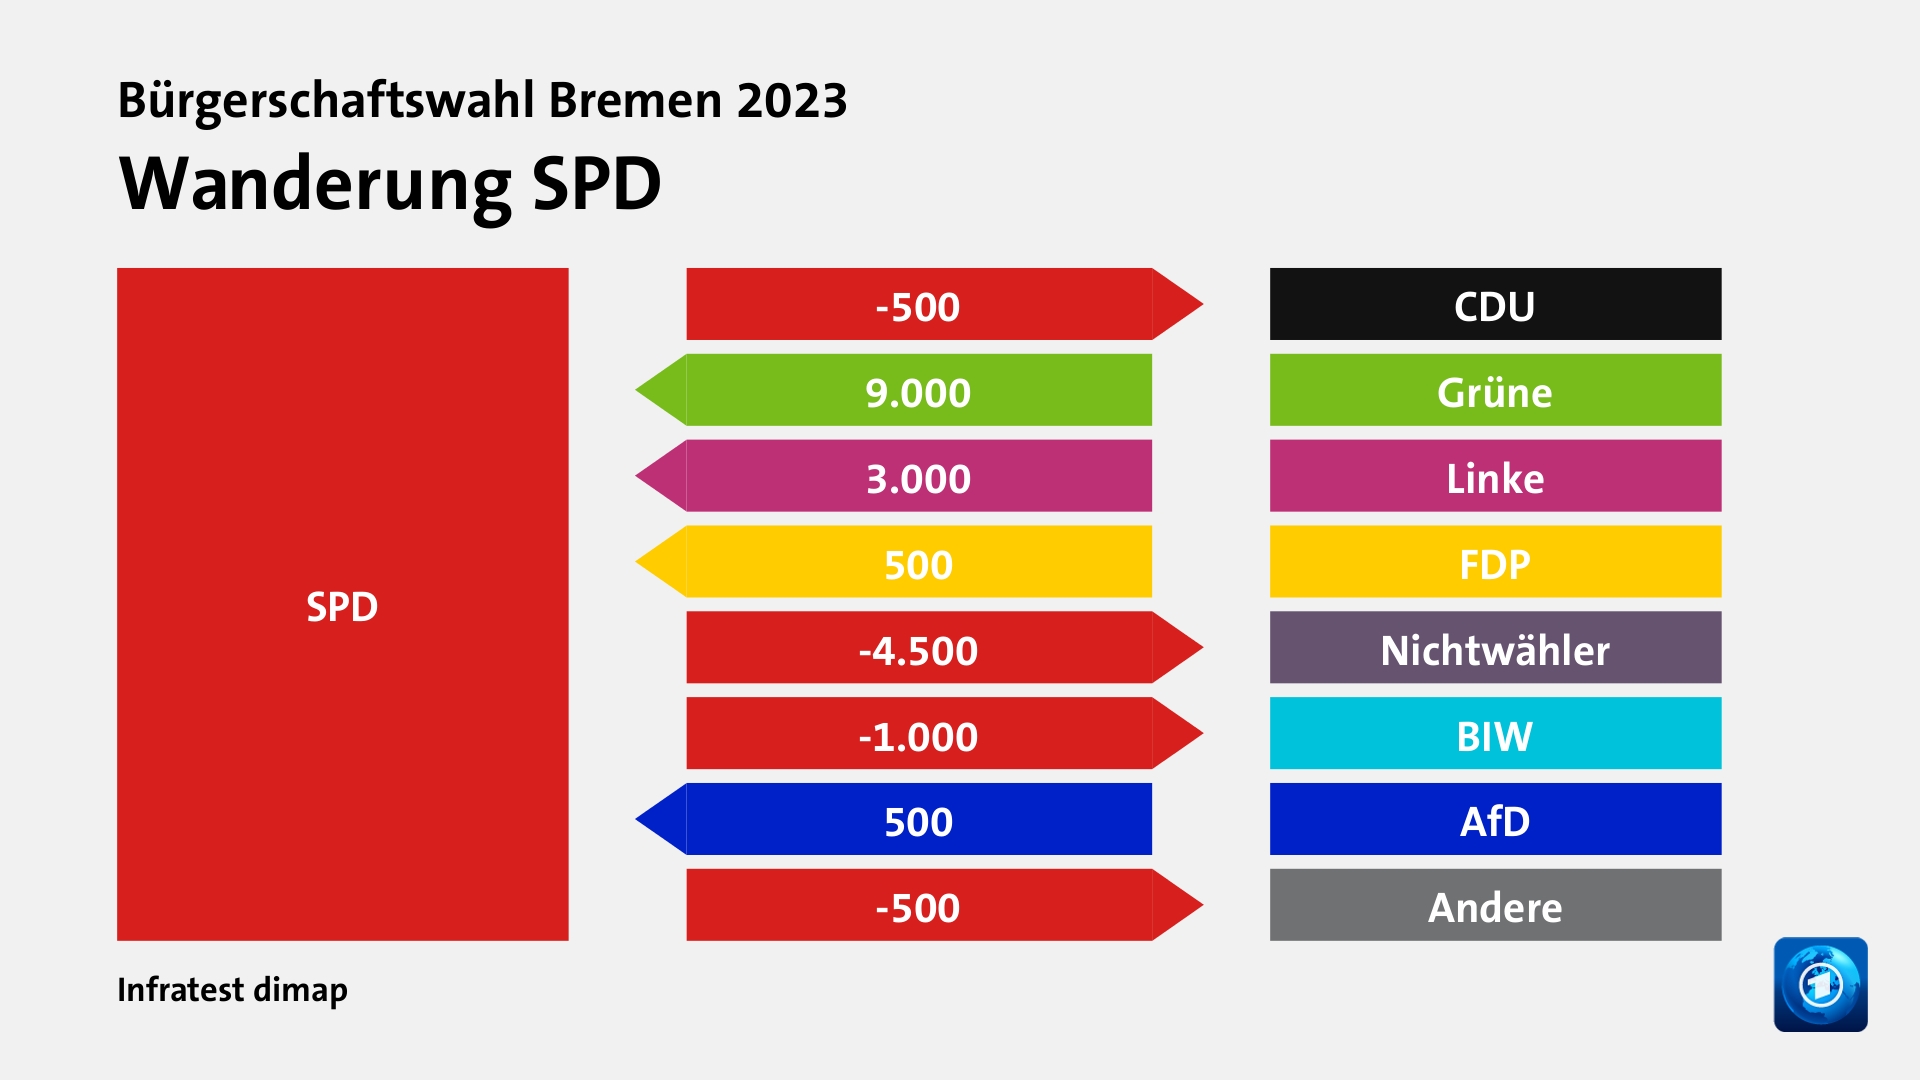 Wanderung SPDzu CDU 500 Wähler, von Grüne 9.000 Wähler, von Linke 3.000 Wähler, von FDP 500 Wähler, zu Nichtwähler 4.500 Wähler, zu BIW 1.000 Wähler, von AfD 500 Wähler, zu Andere 500 Wähler, Quelle: Infratest dimap